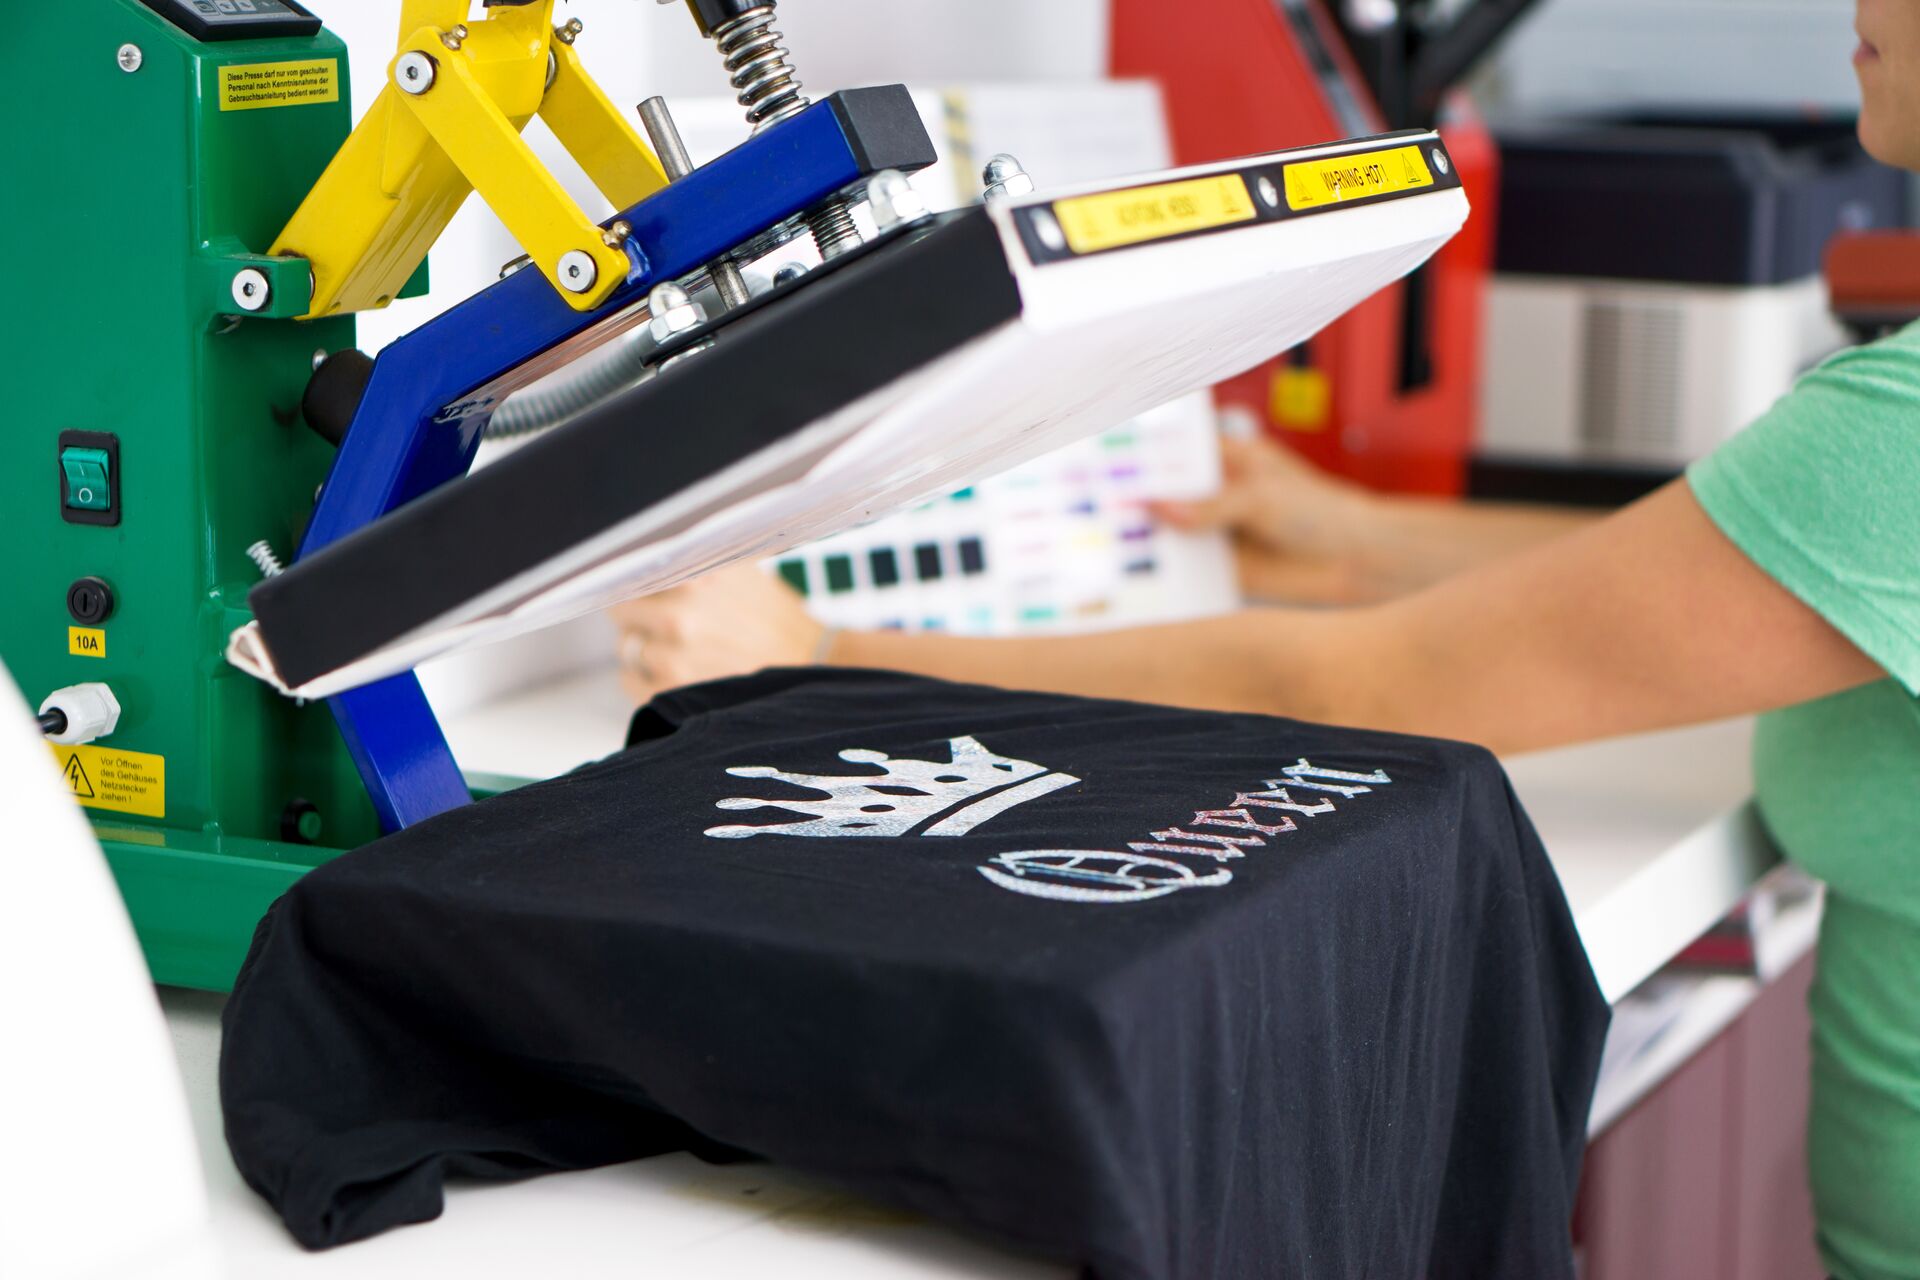 Textildruck Maschine zum T-Shirt bedrucken - in der Nähe von Dresden